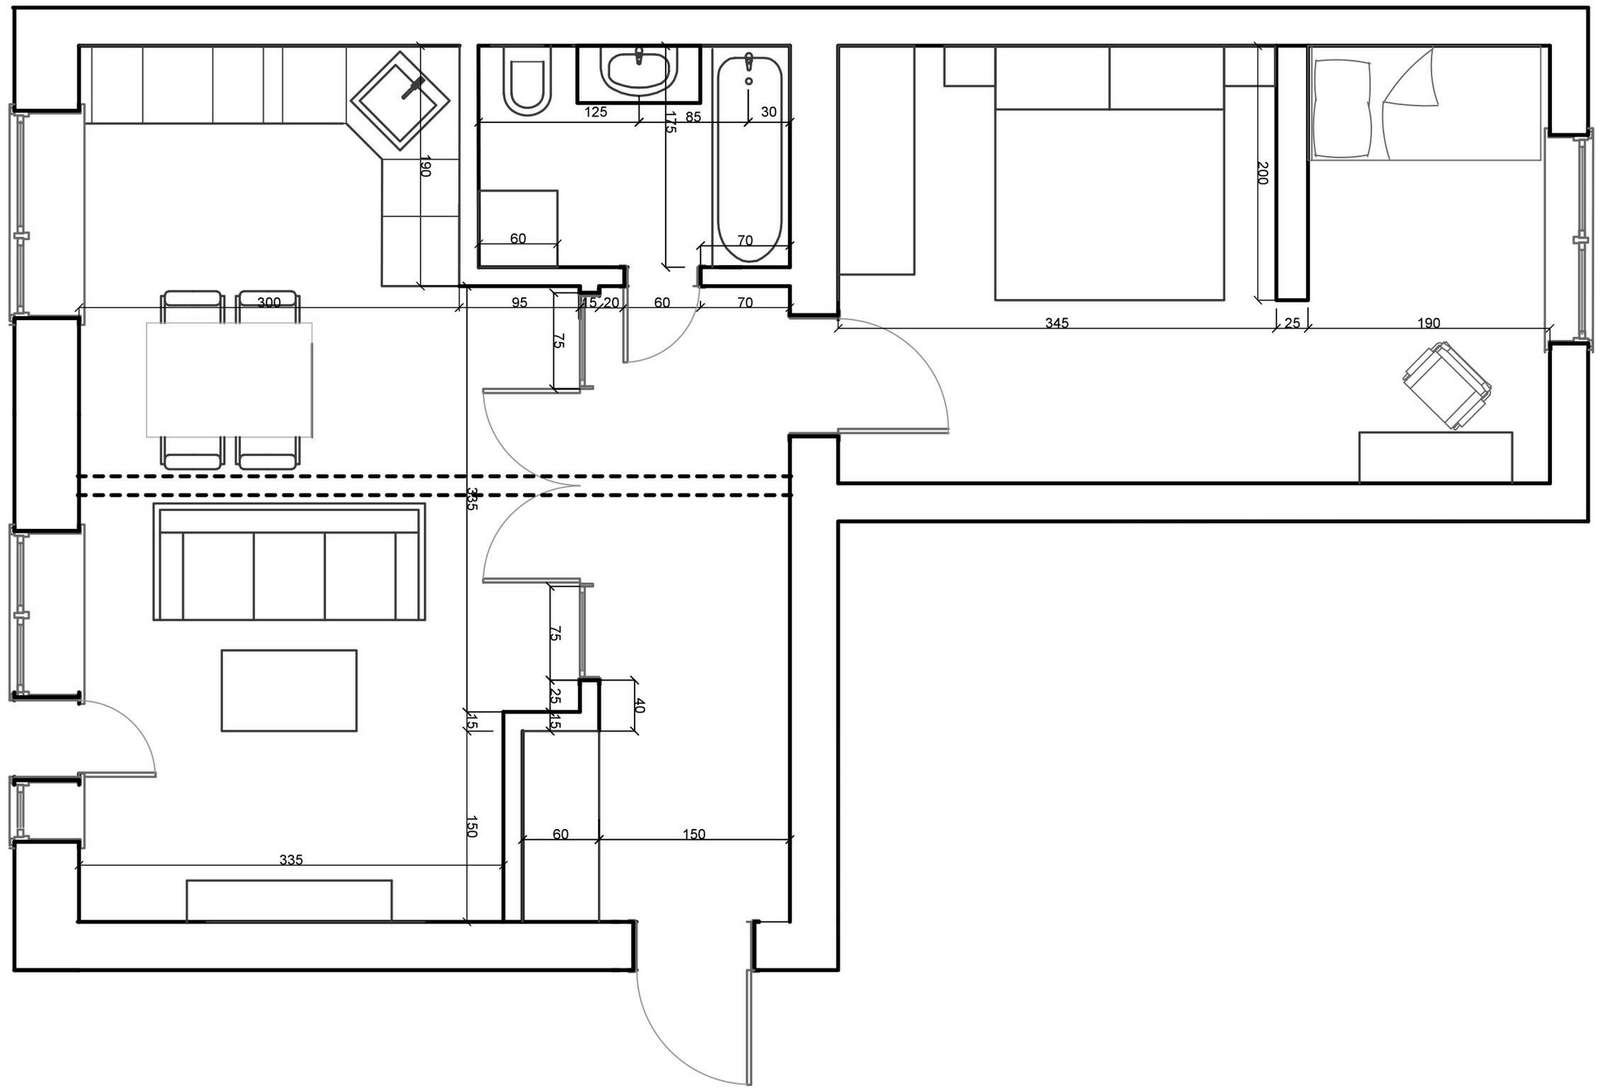 50m2 - egyszerűn, ízlésesen berendezett lakás könnyű, világos terek szépen felújítva egy ötemeletes téglaházban